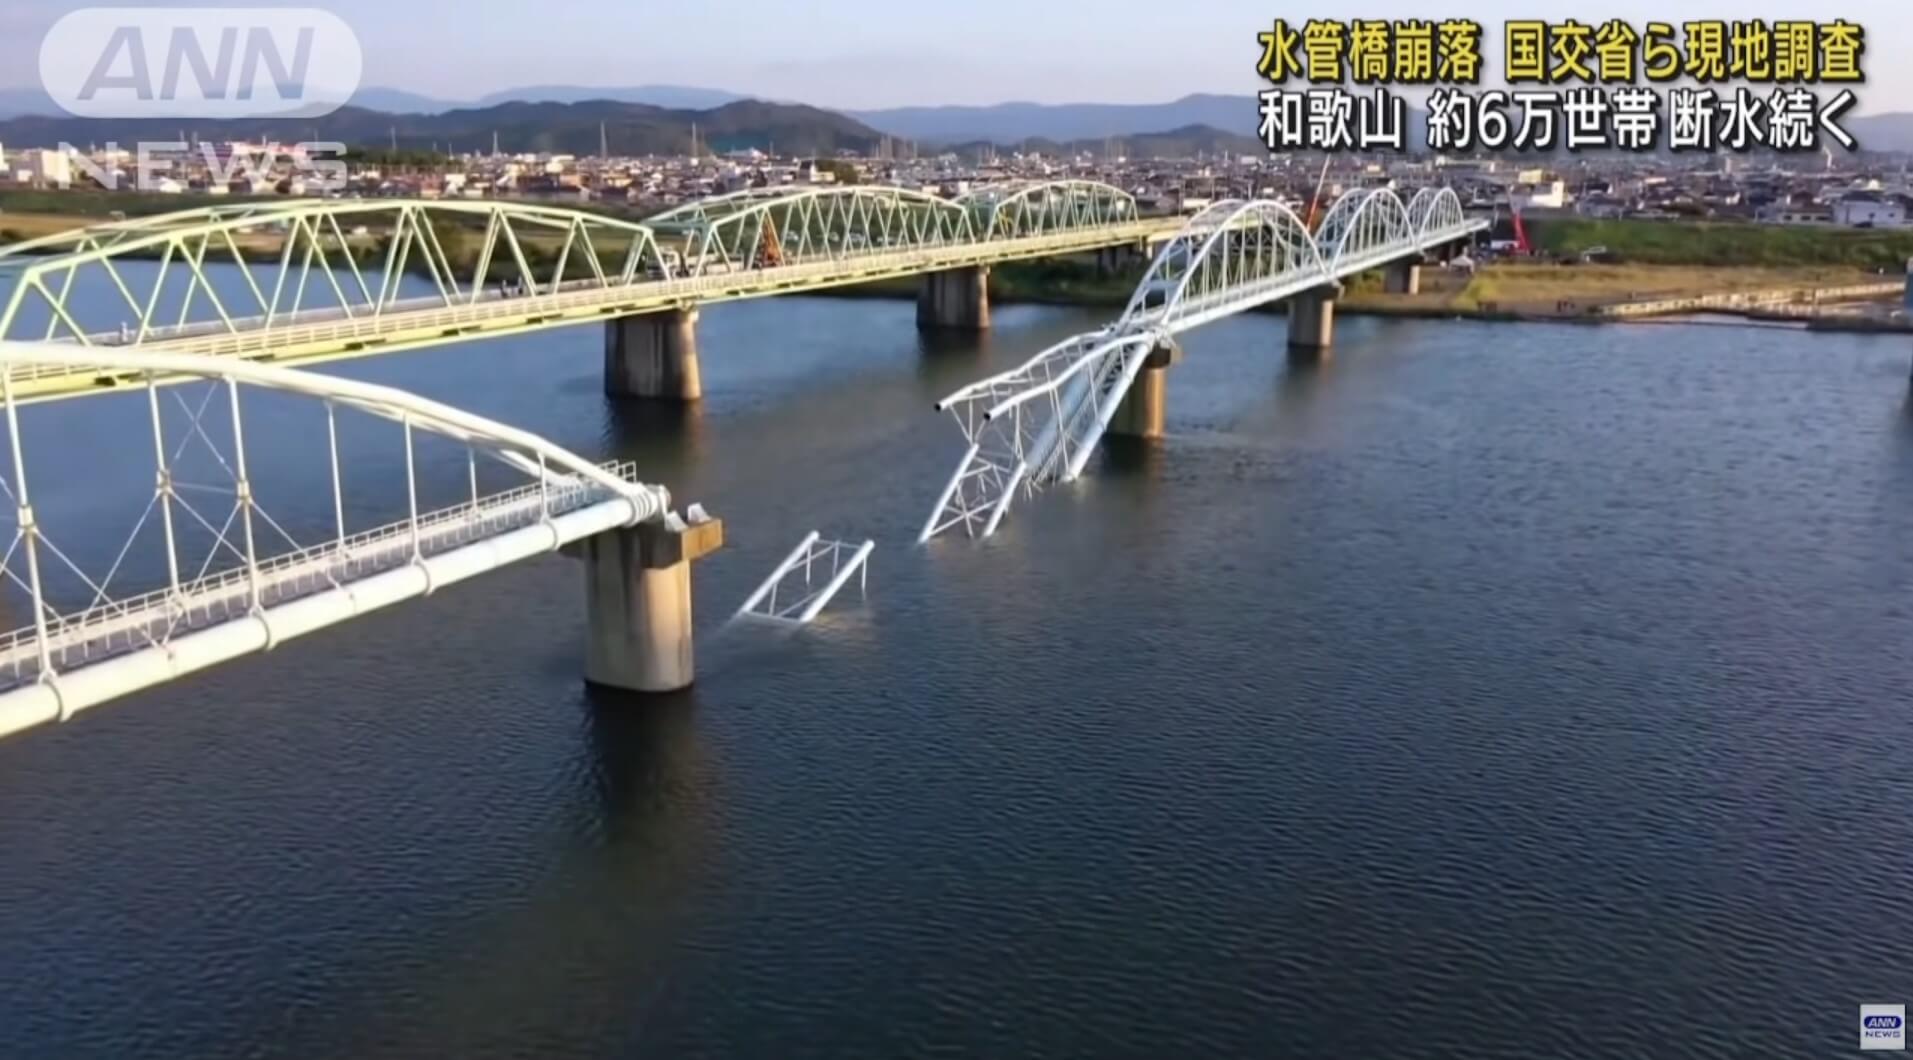 Ponte de abastecimento de água desaba e é consertada em 6 dias no Japão